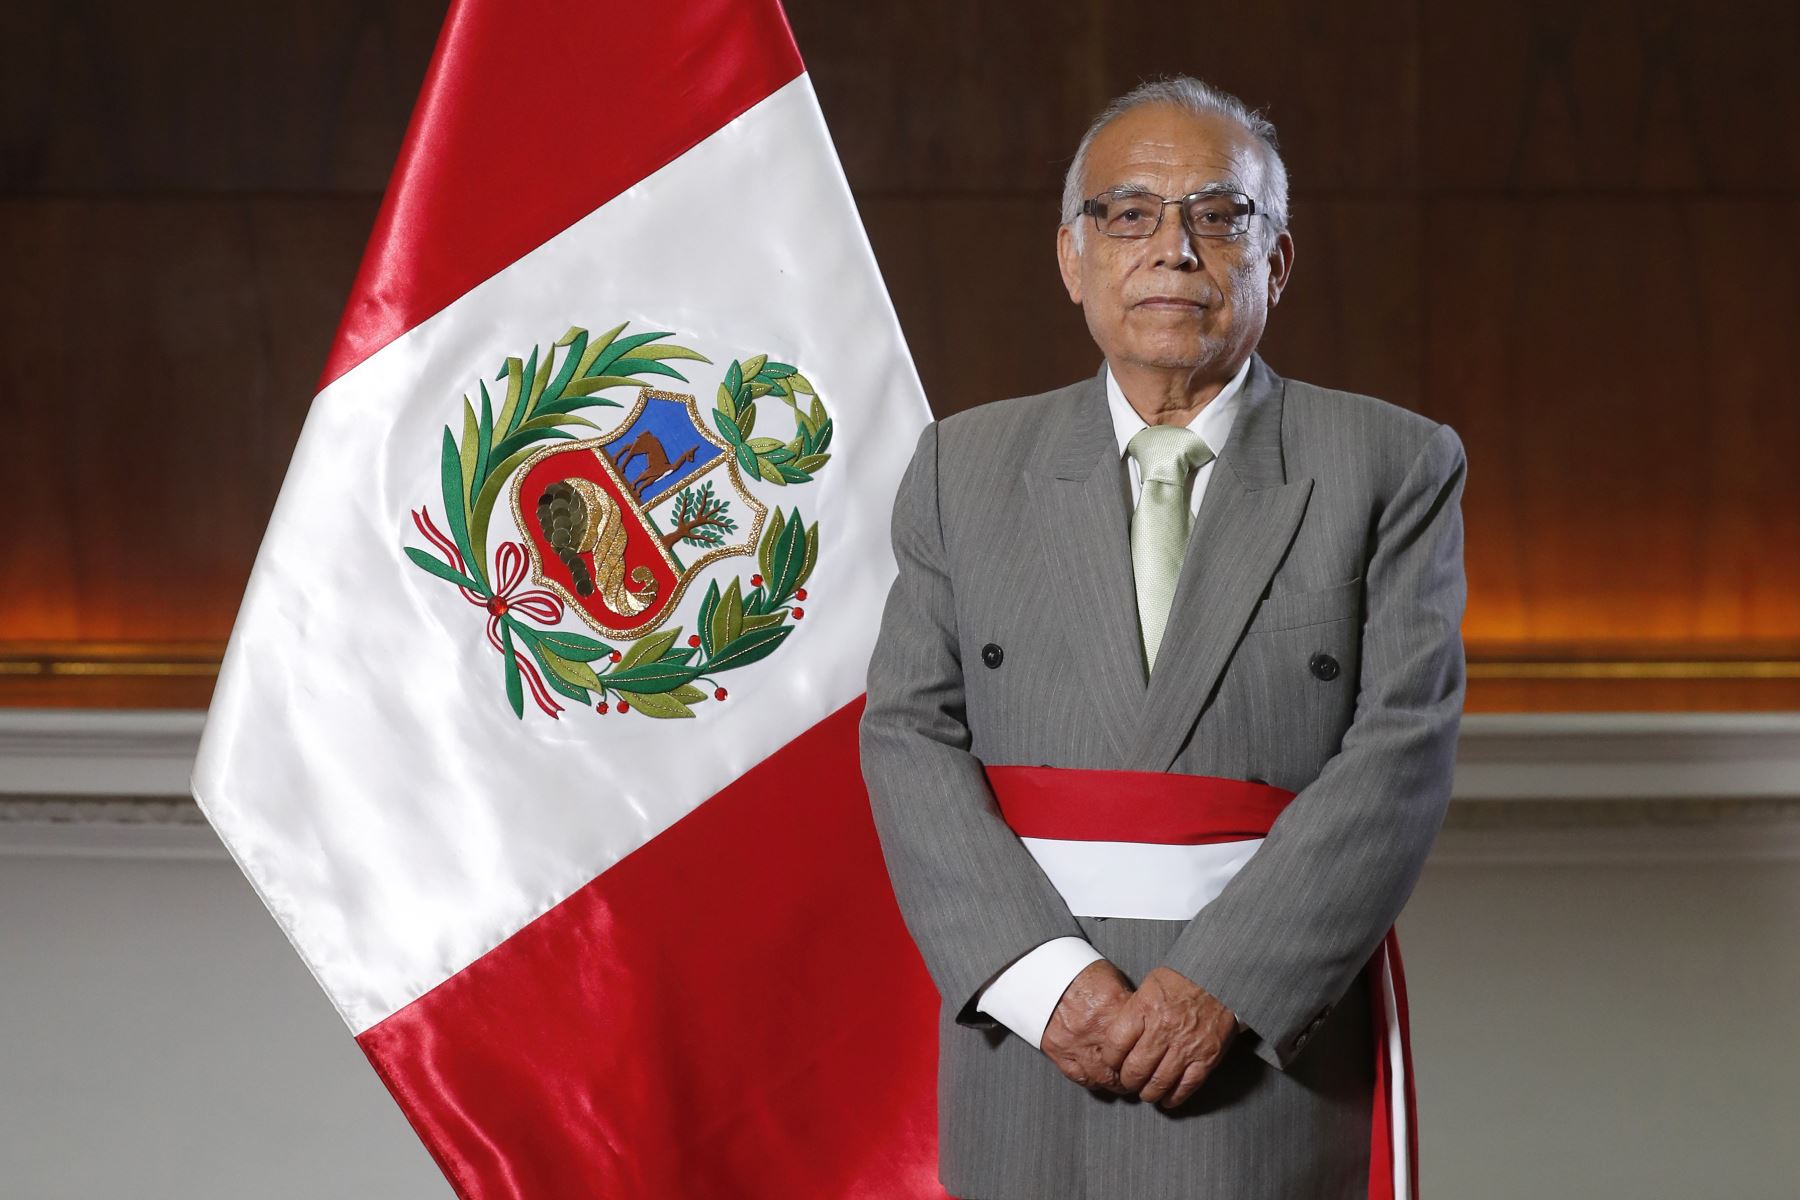 Περού: Τέταρτη παραίτηση πρωθυπουργού μέσα σε έναν χρόνο